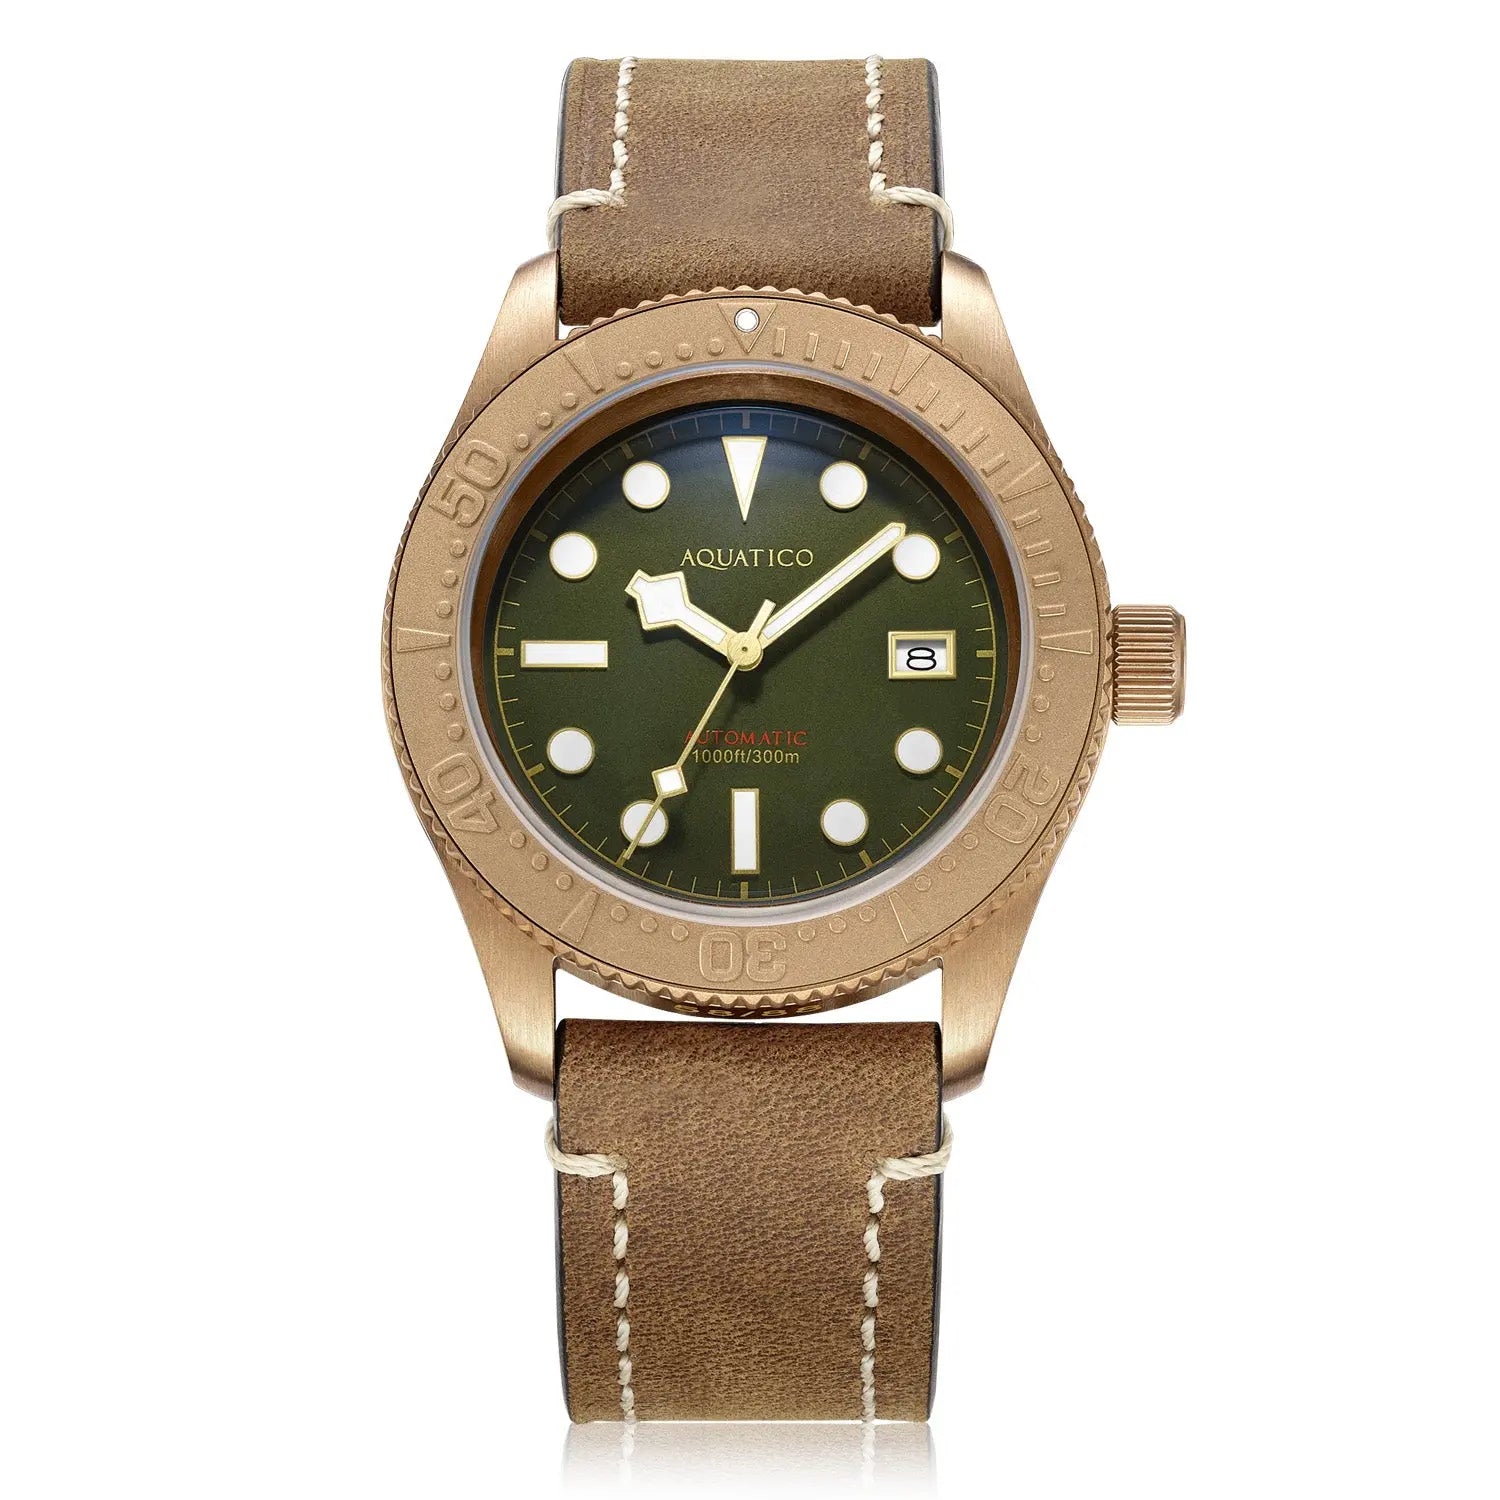 Aquatico Bronze Sea Star Green Dial Dive Watches for Men - Aquatico